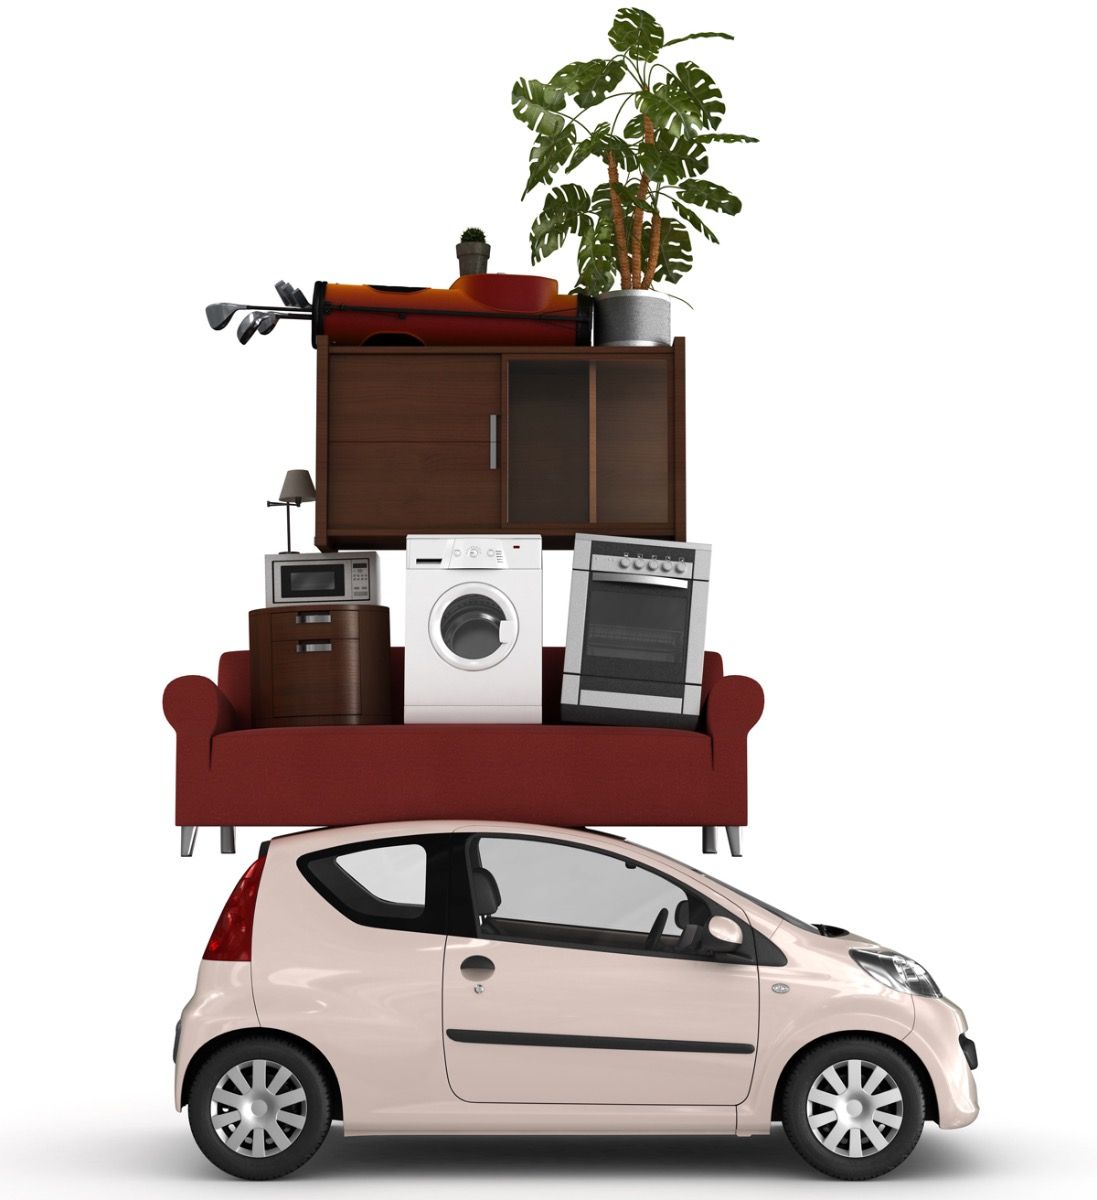 Transporter un meuble sur le toit de la voiture 2/2 : un exemple concret 